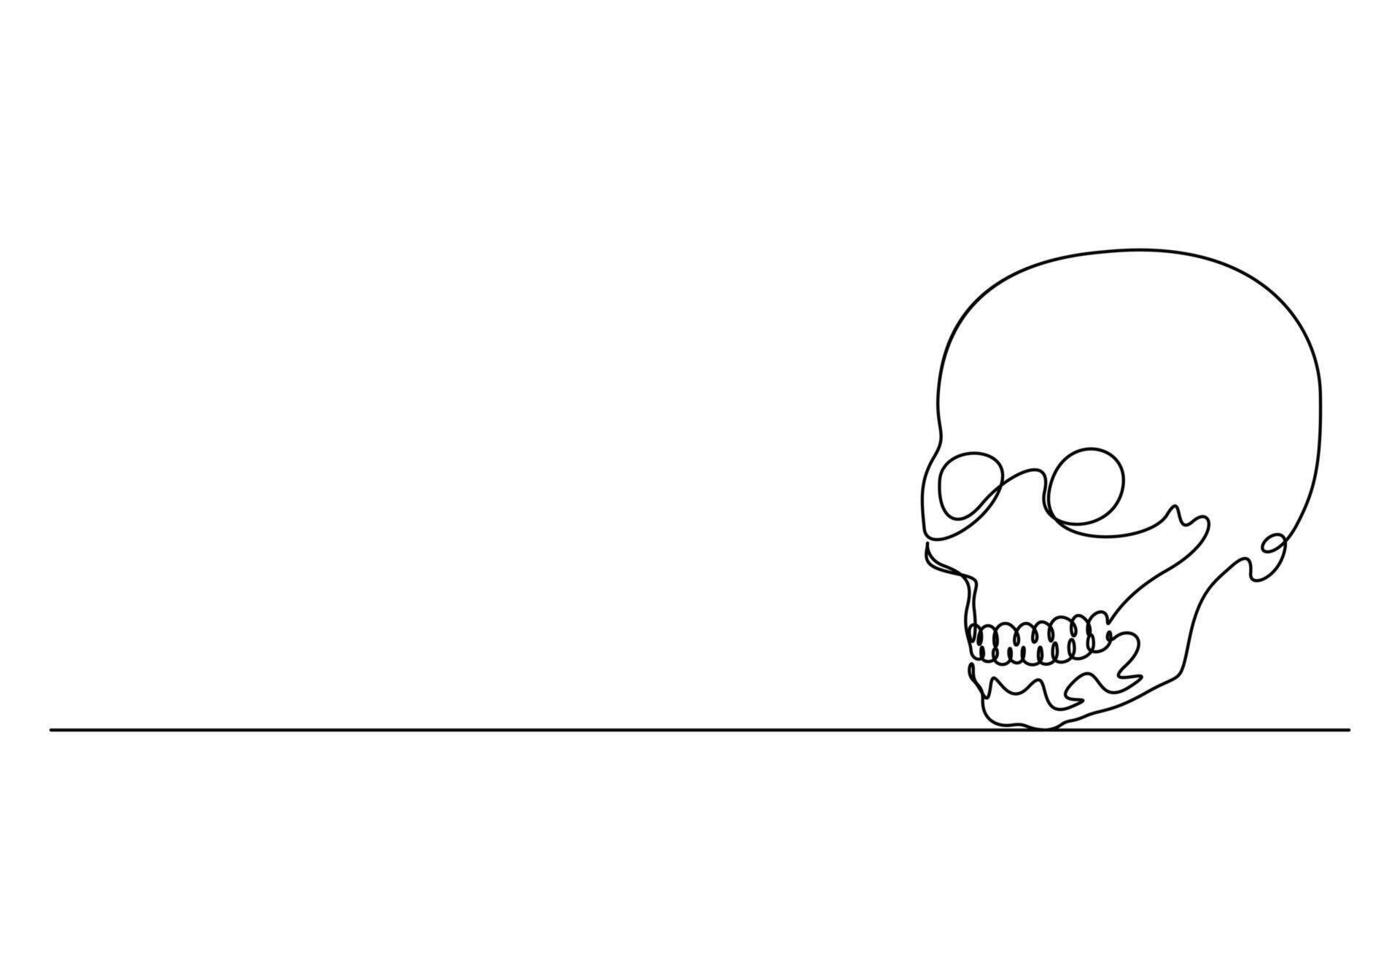 uno continuo linea disegno di umano cranio premio illustrazione vettore